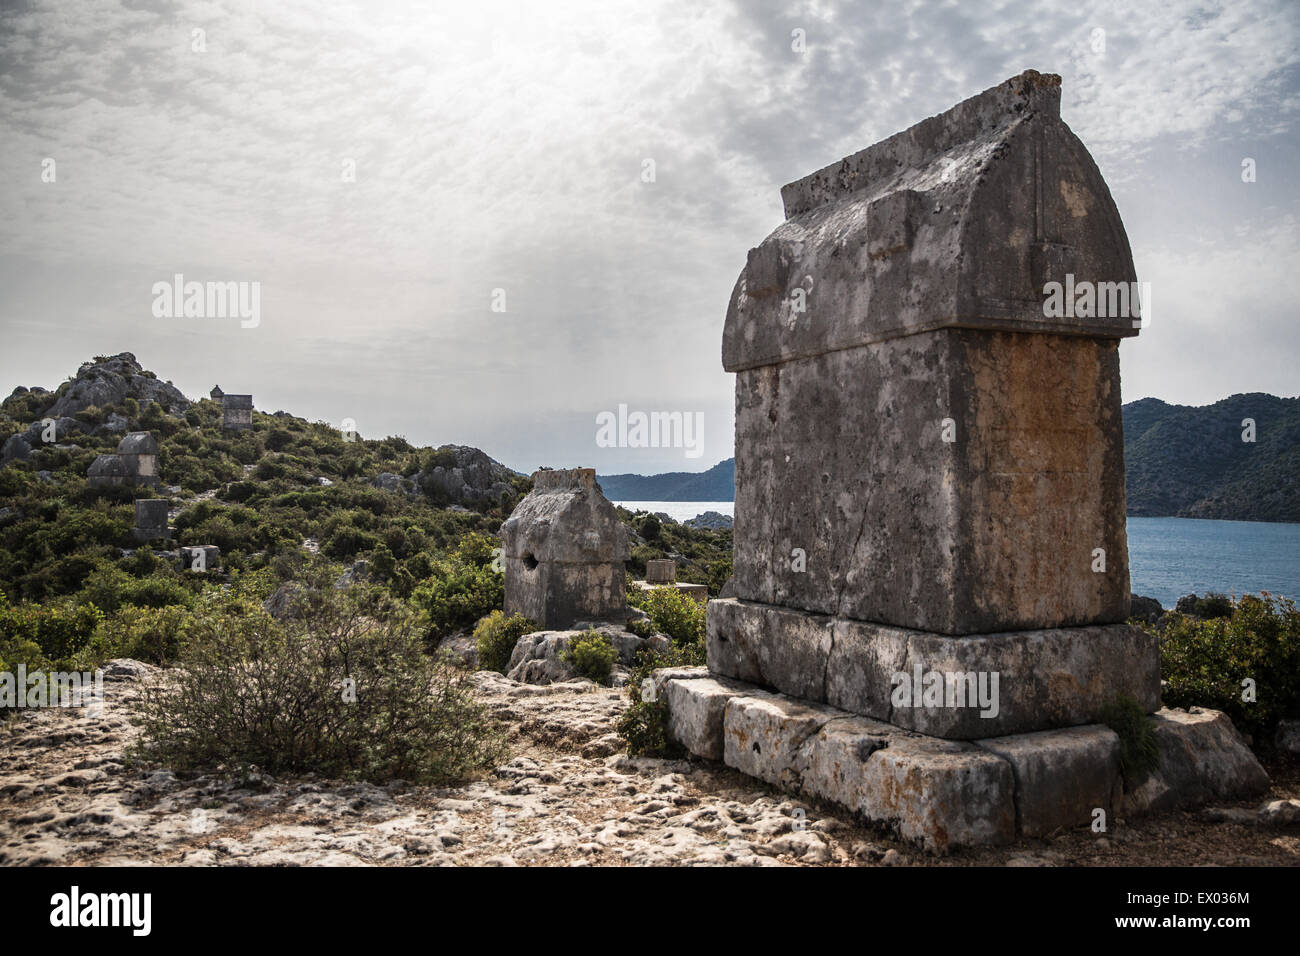 Avis de tombeau, de Lycie, Kalekoy, Demre, Simena, Turquie Banque D'Images